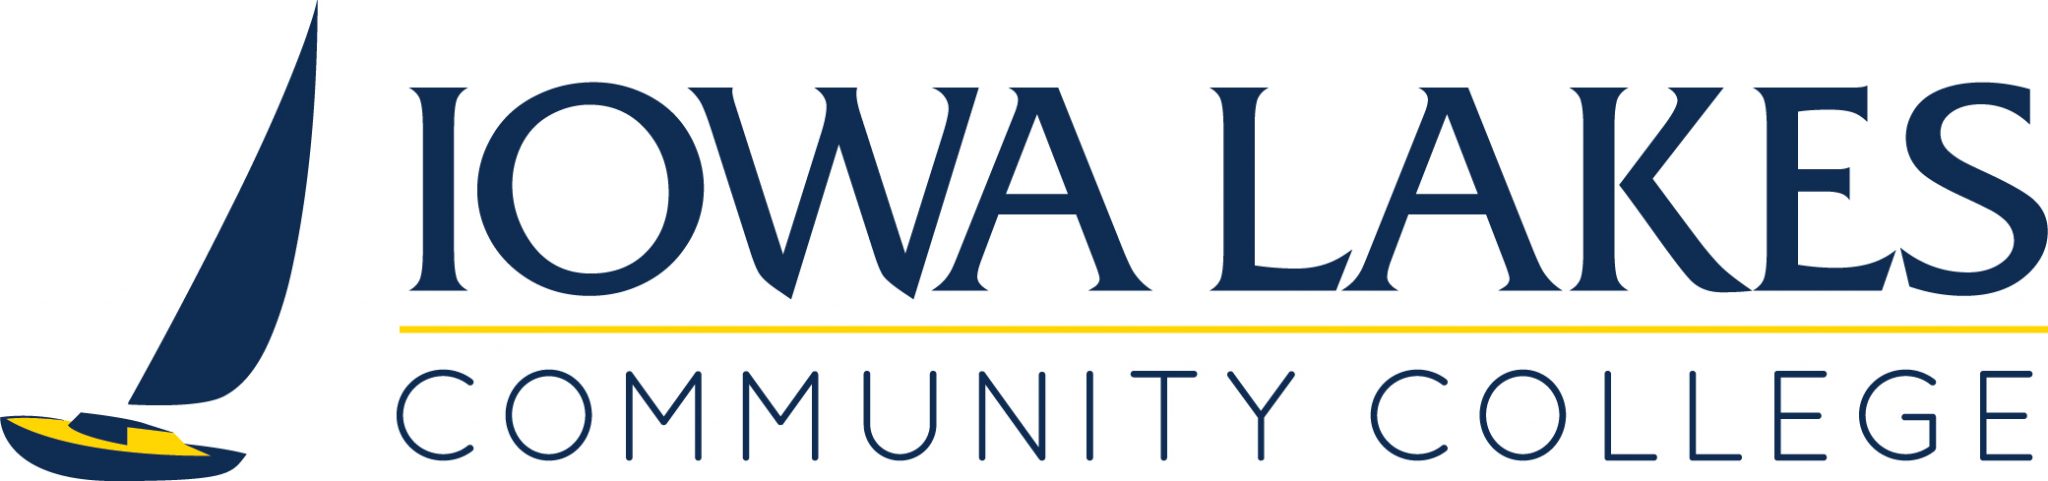 Annual Report Iowa Lakes Community College